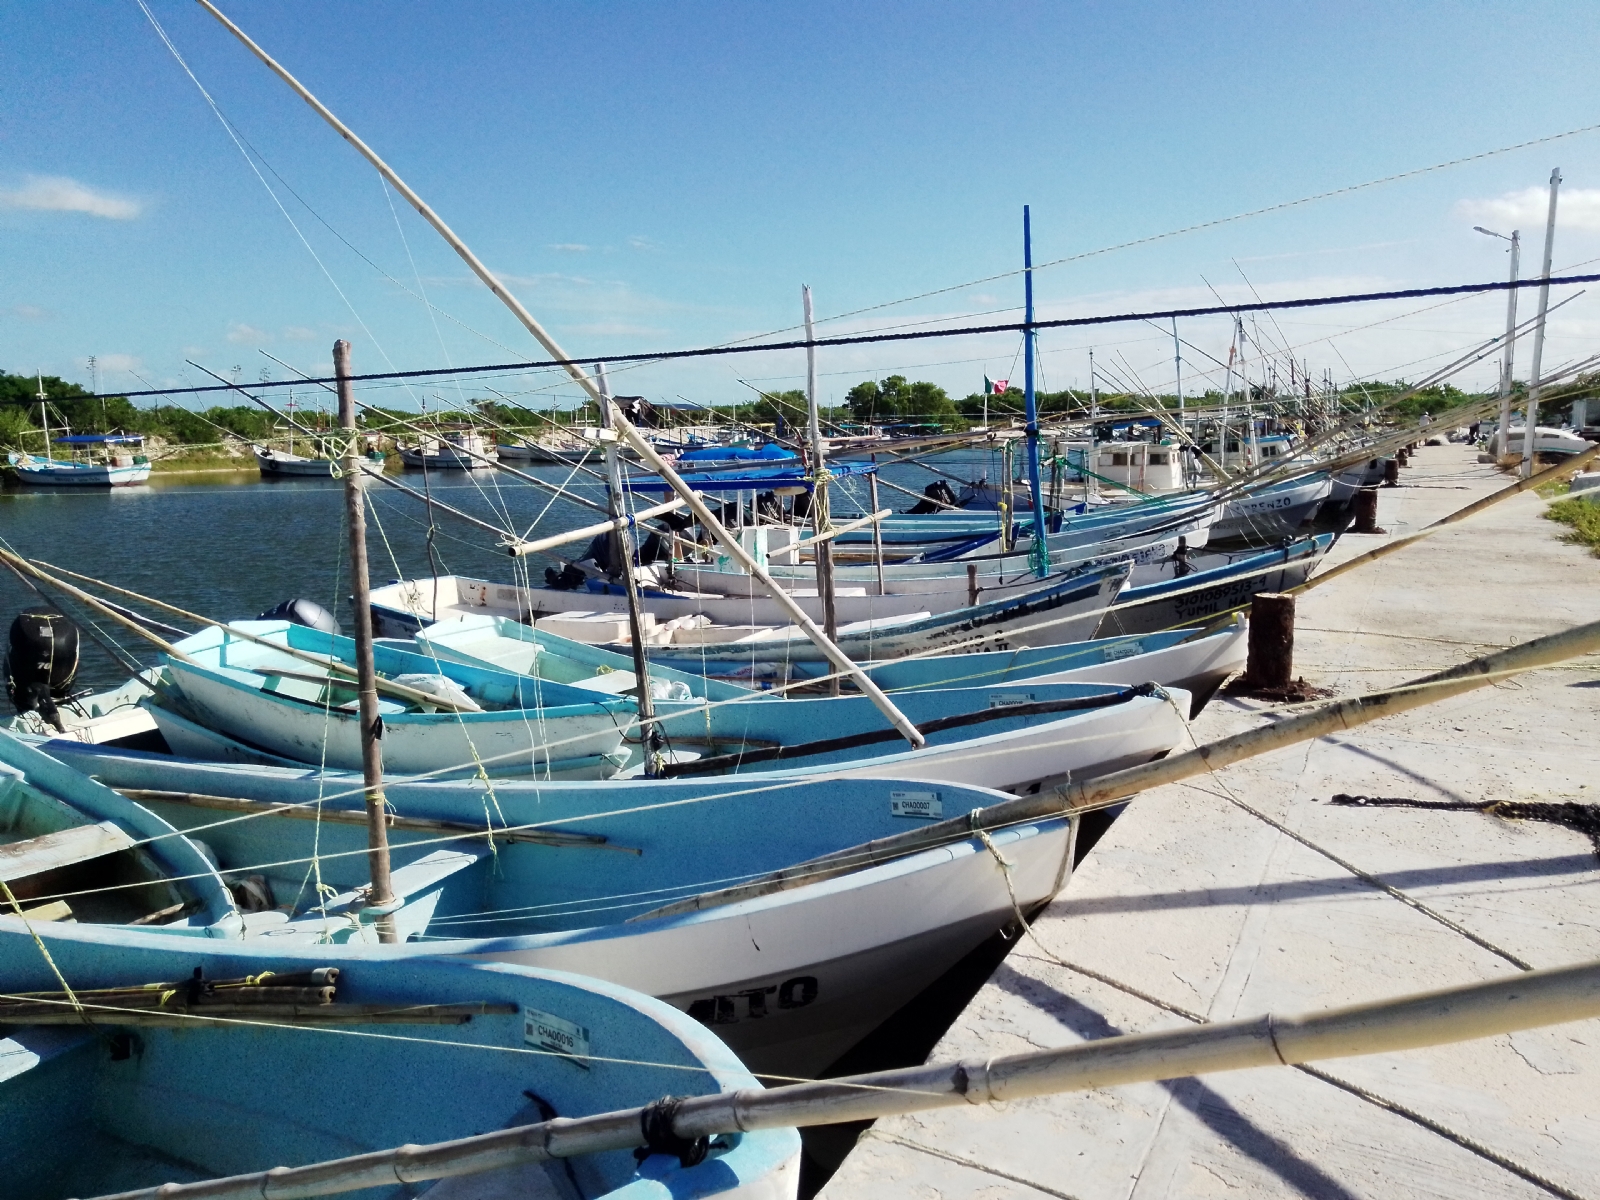 Incremento de precio en la carnada de pulpo afecta a pescadores de Chabihau, Yucatán